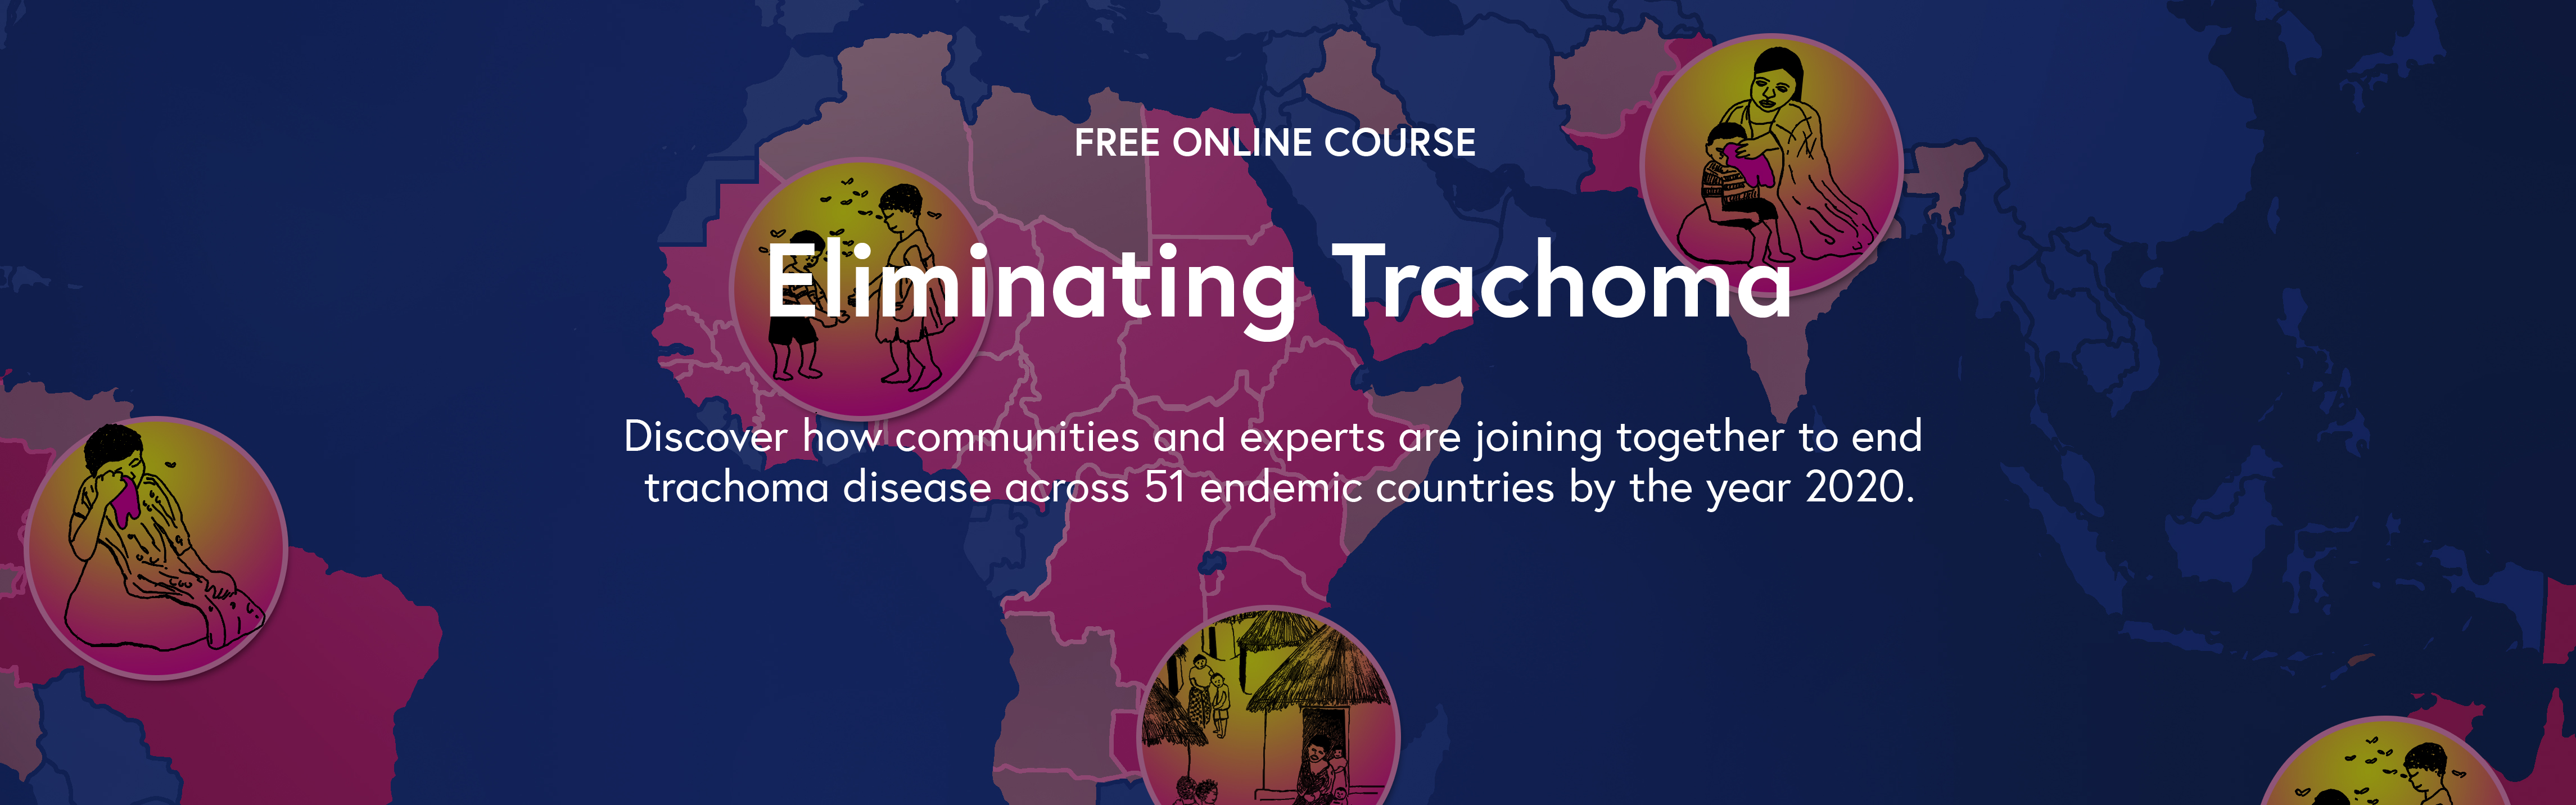 Eliminating Trachoma